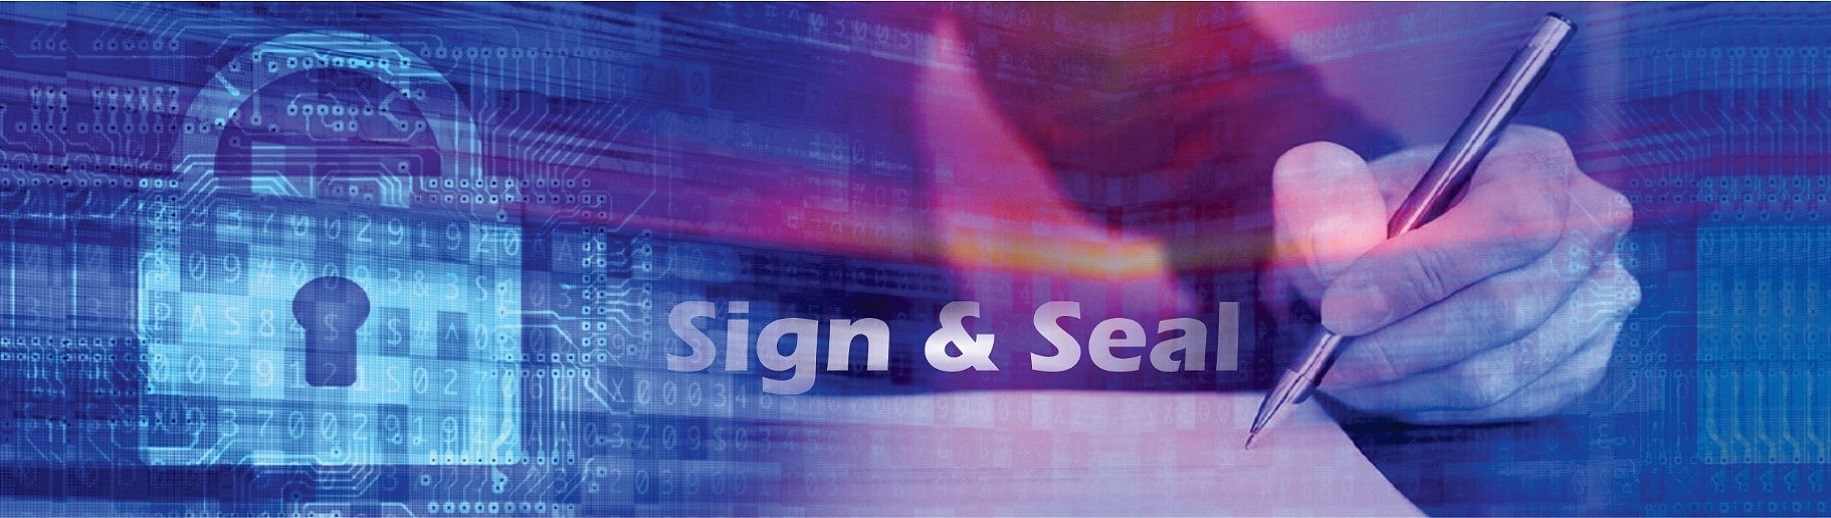 نرم افزار مهر و موم (Sign and Seal)